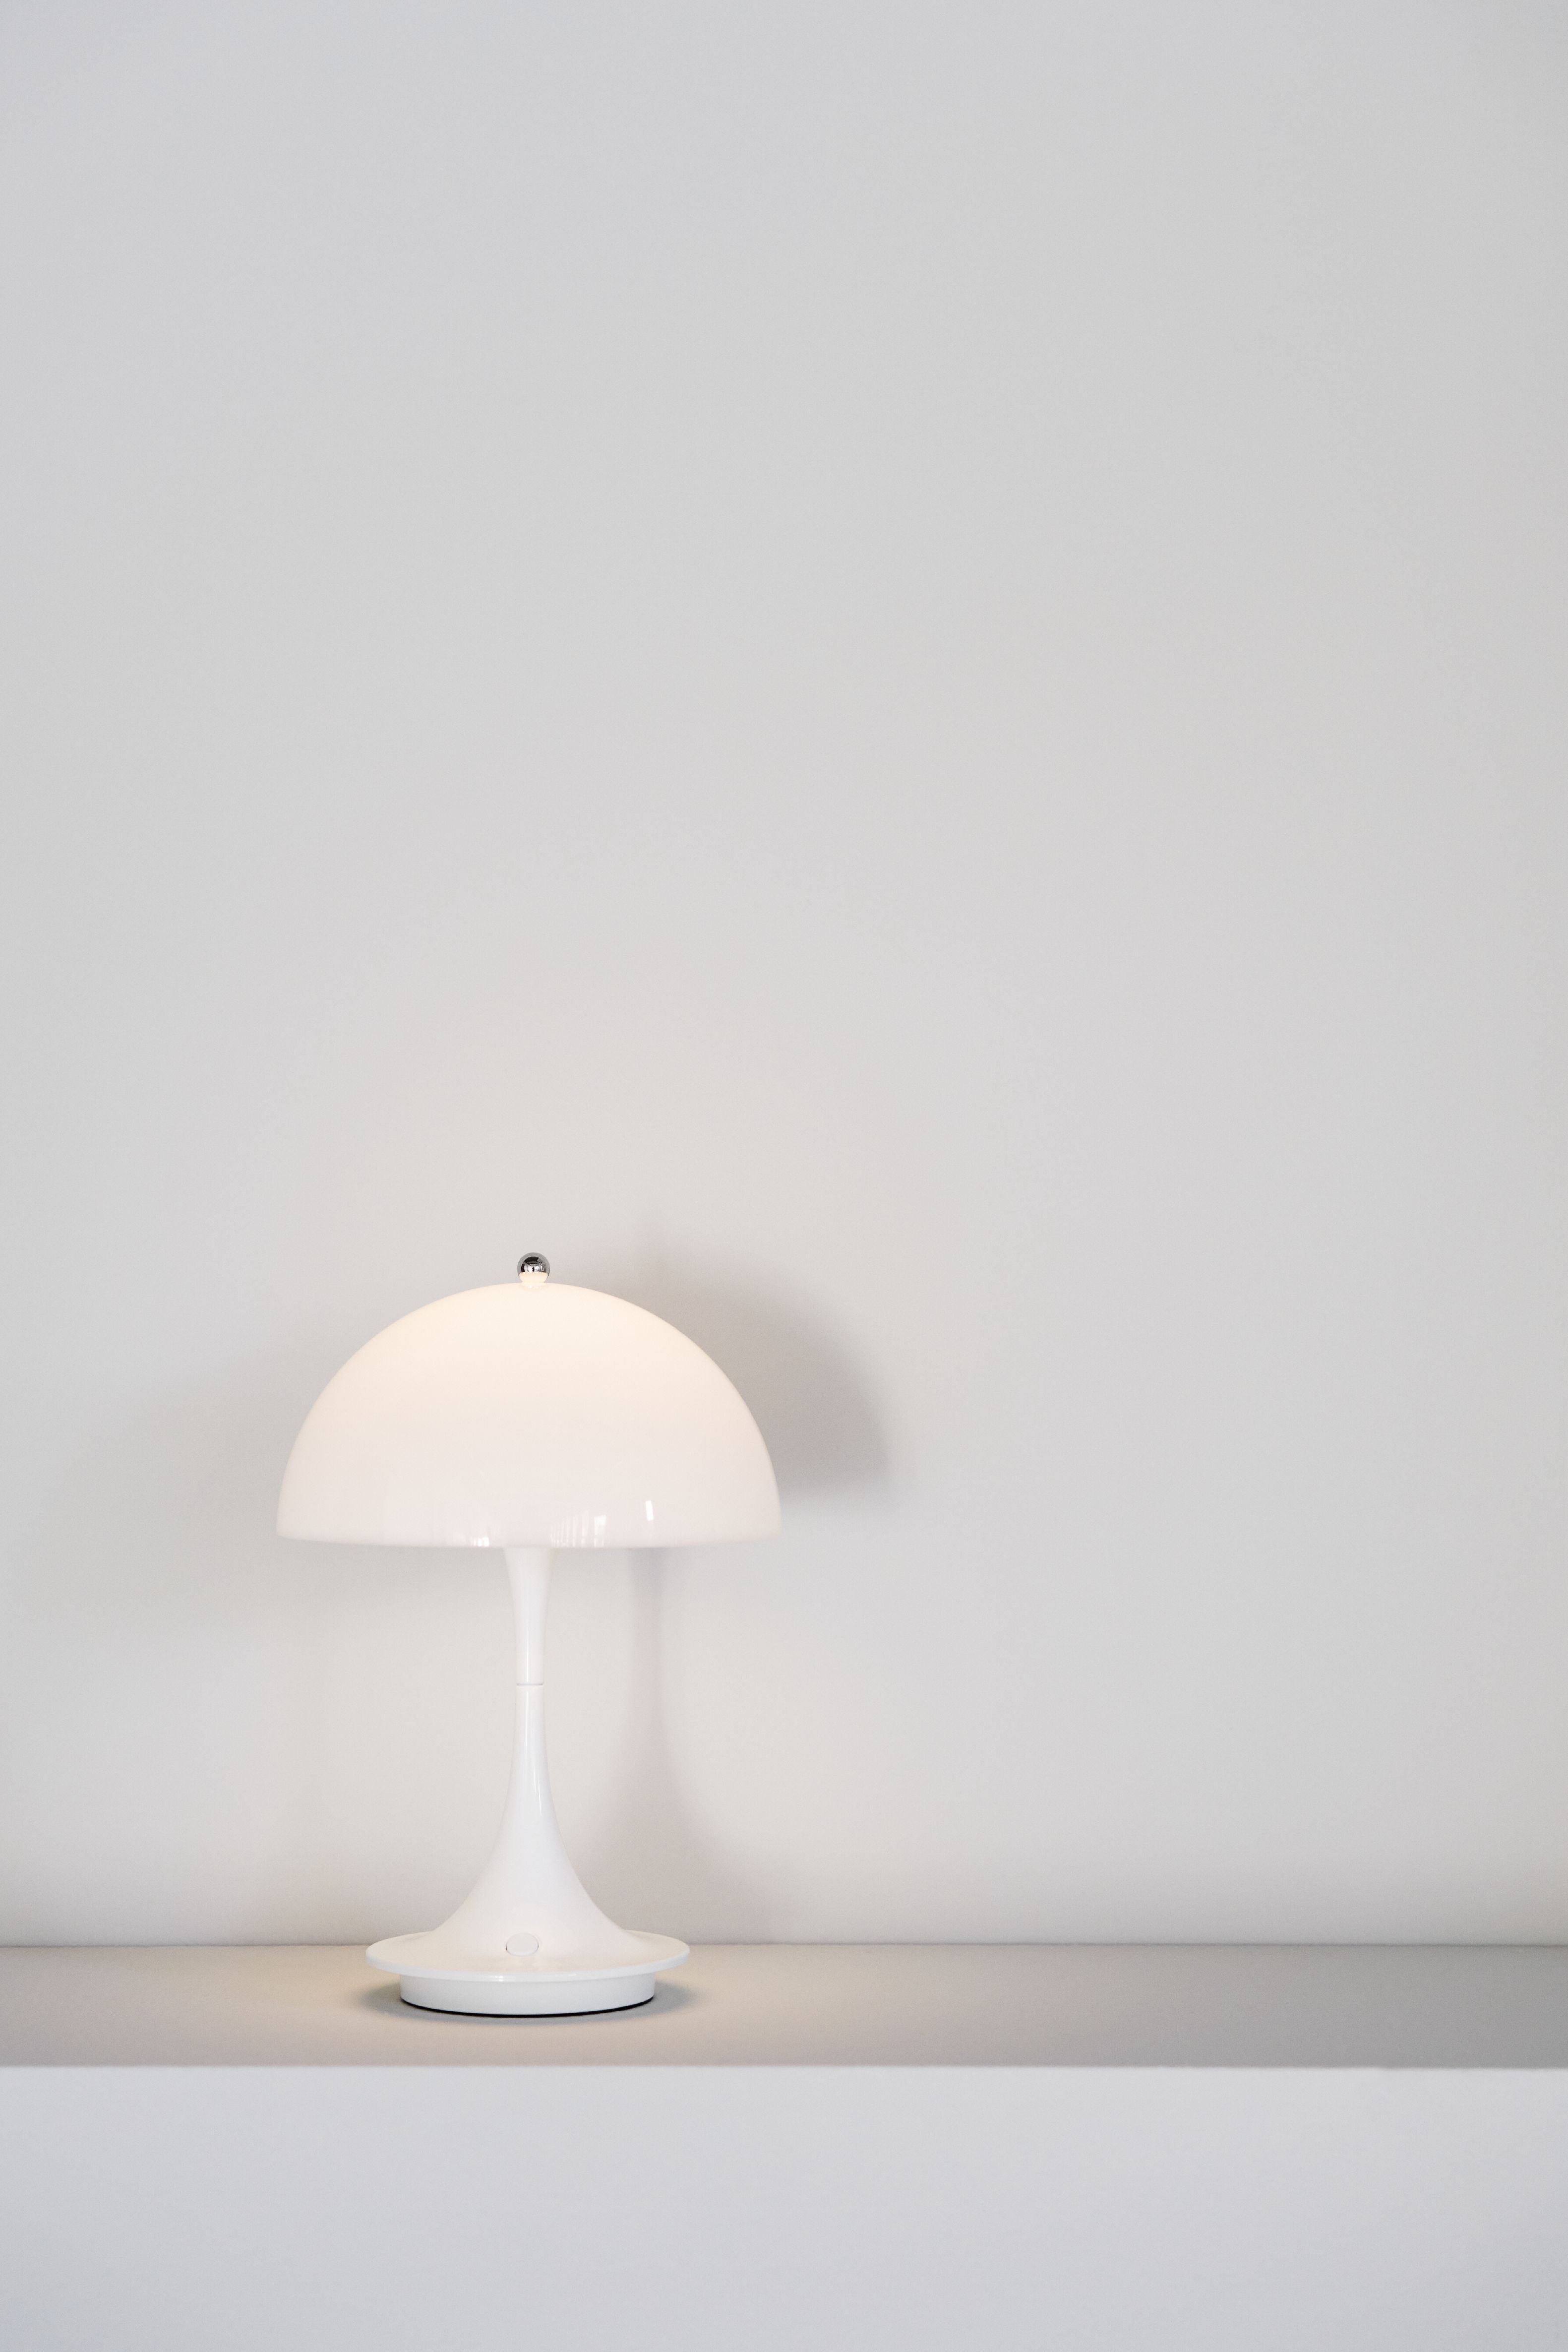 Louis Poulsen Panthella 160 Portable Table Lampe V2 LED 27 K, acrylique opale blanc